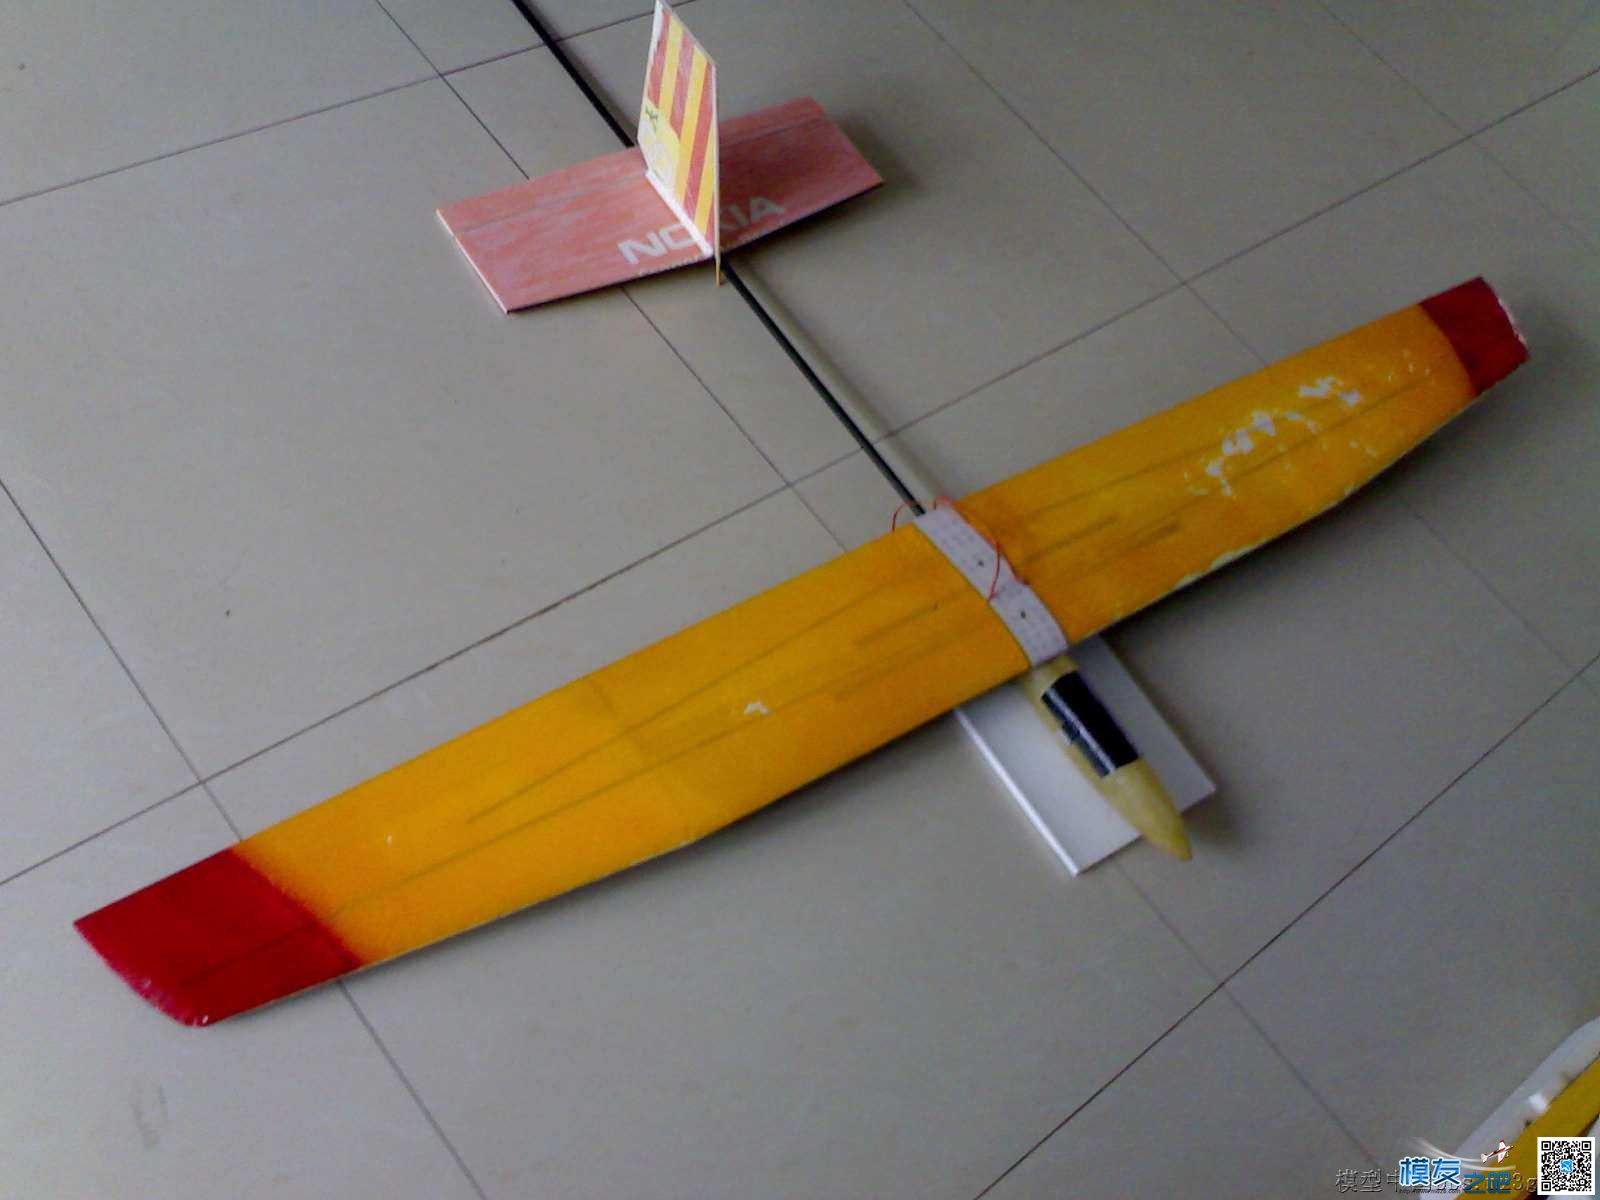 1.5米无动力山坡滑翔机制作过程  作者:仇池侠 5691 